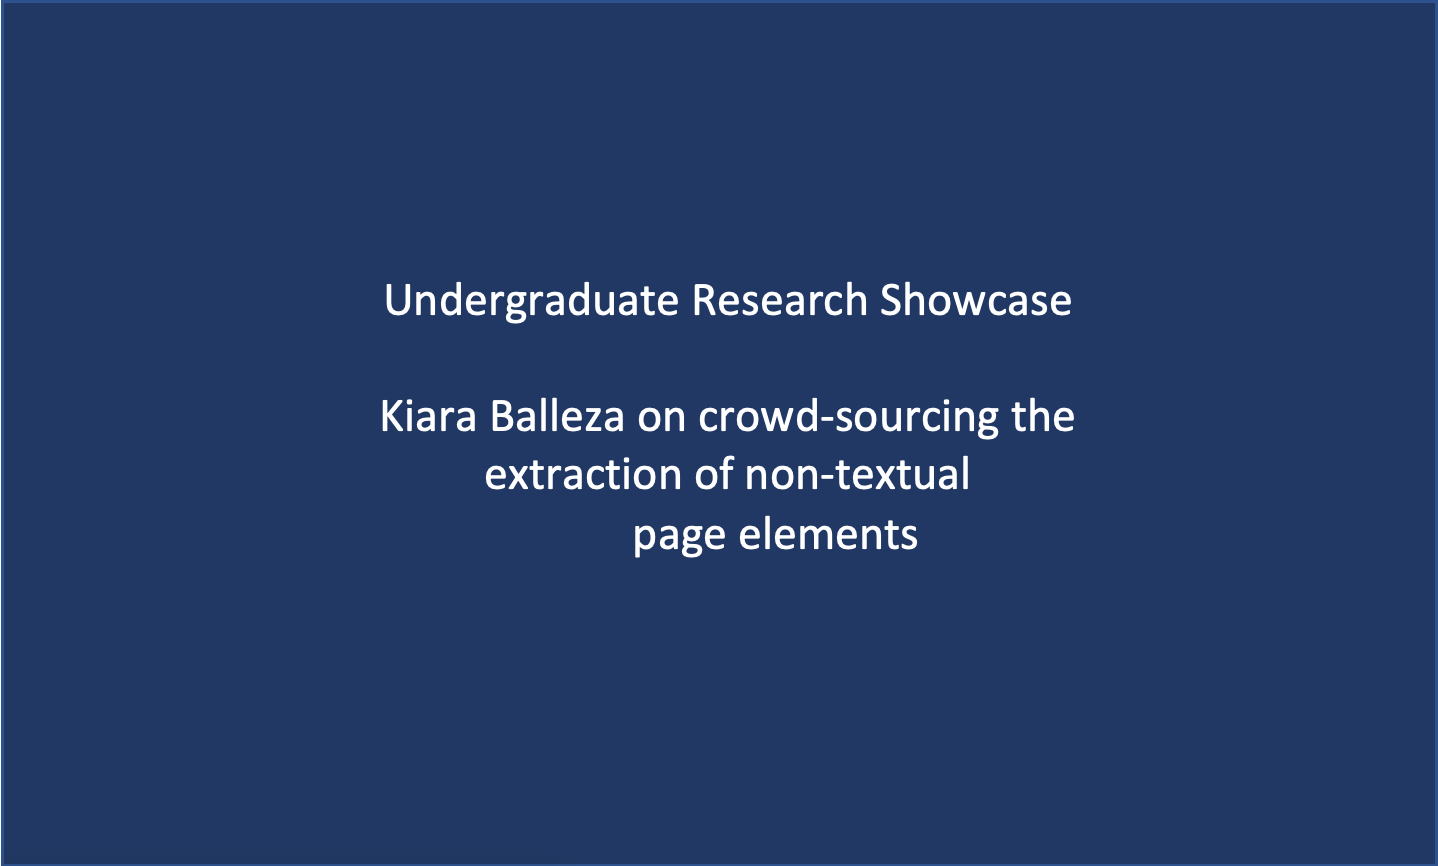 Workshop 5: Undergraduate Research Showcase – Kiara Balleza 